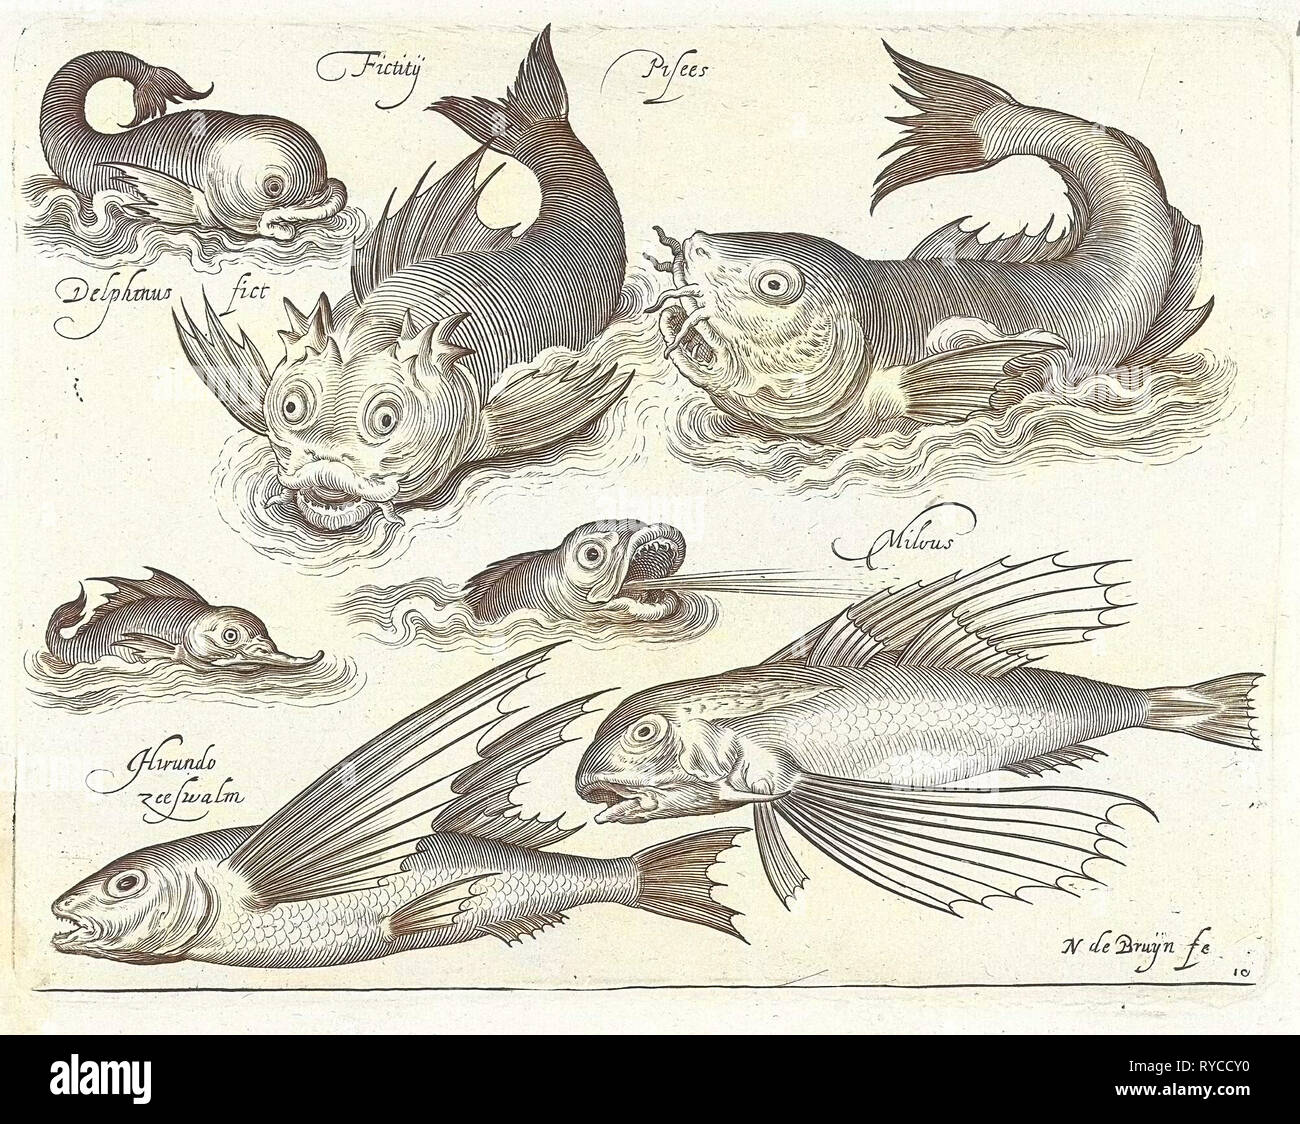 Fantástica invertebrados, incluyendo delfines y dragonet, Nicolaes de Bruyn, 1581-1656 Foto de stock